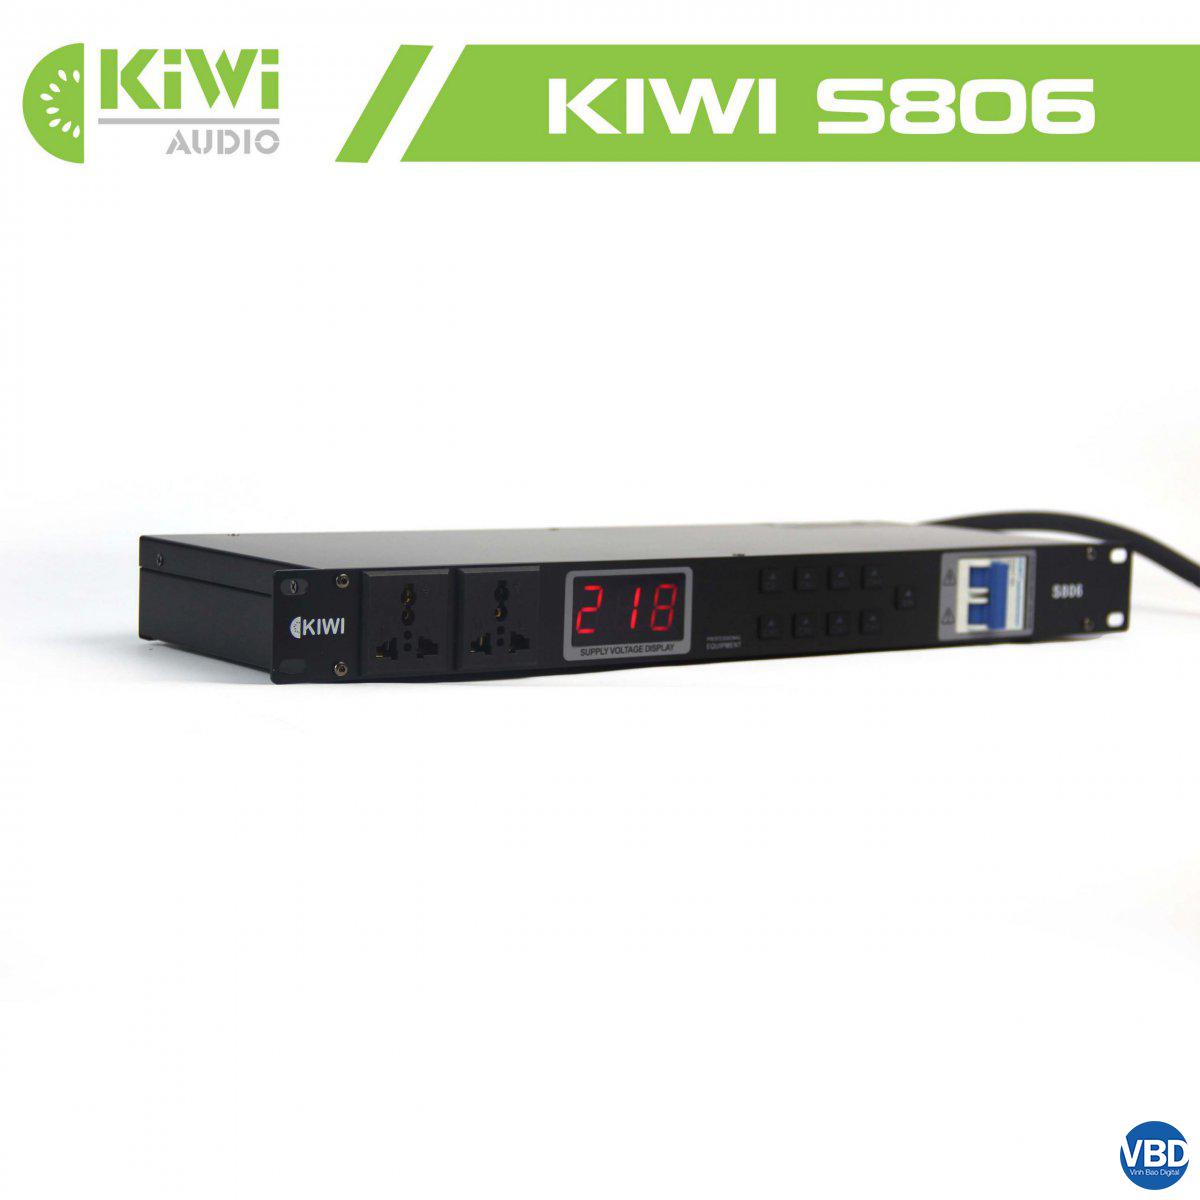 3Thiết bị quản lý nguồn điện tự động KIWI S806 công nghệ hiện đại